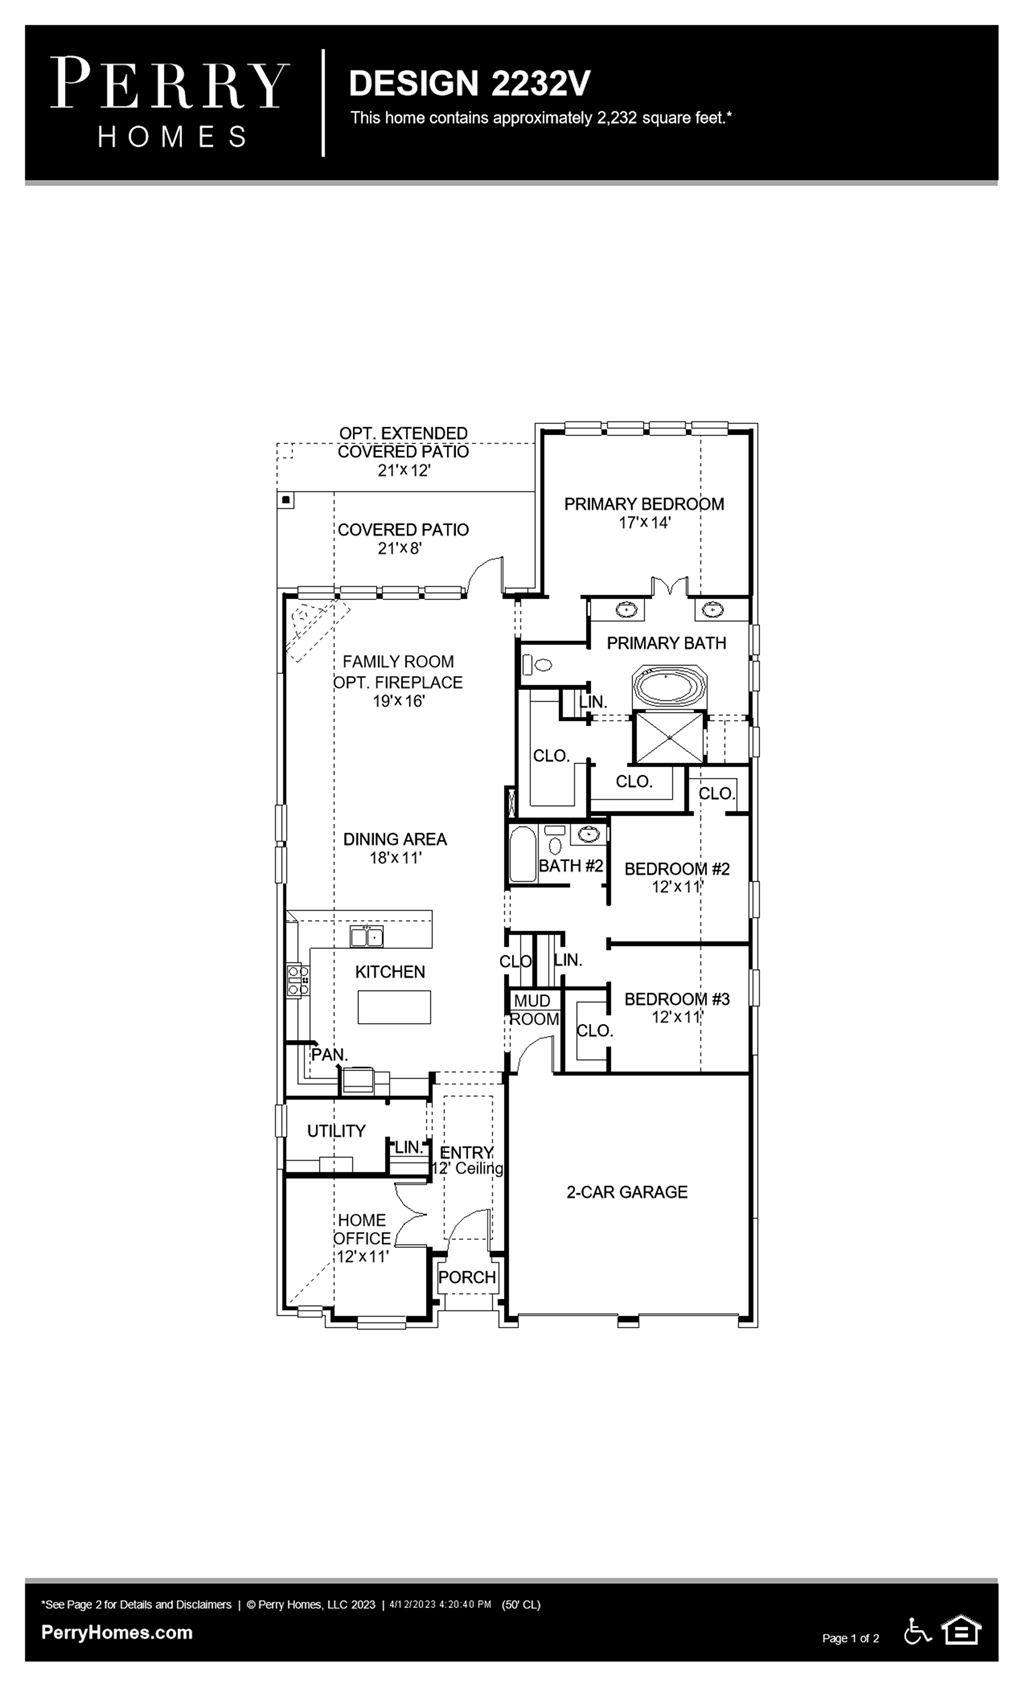 Floor Plan for 2232V